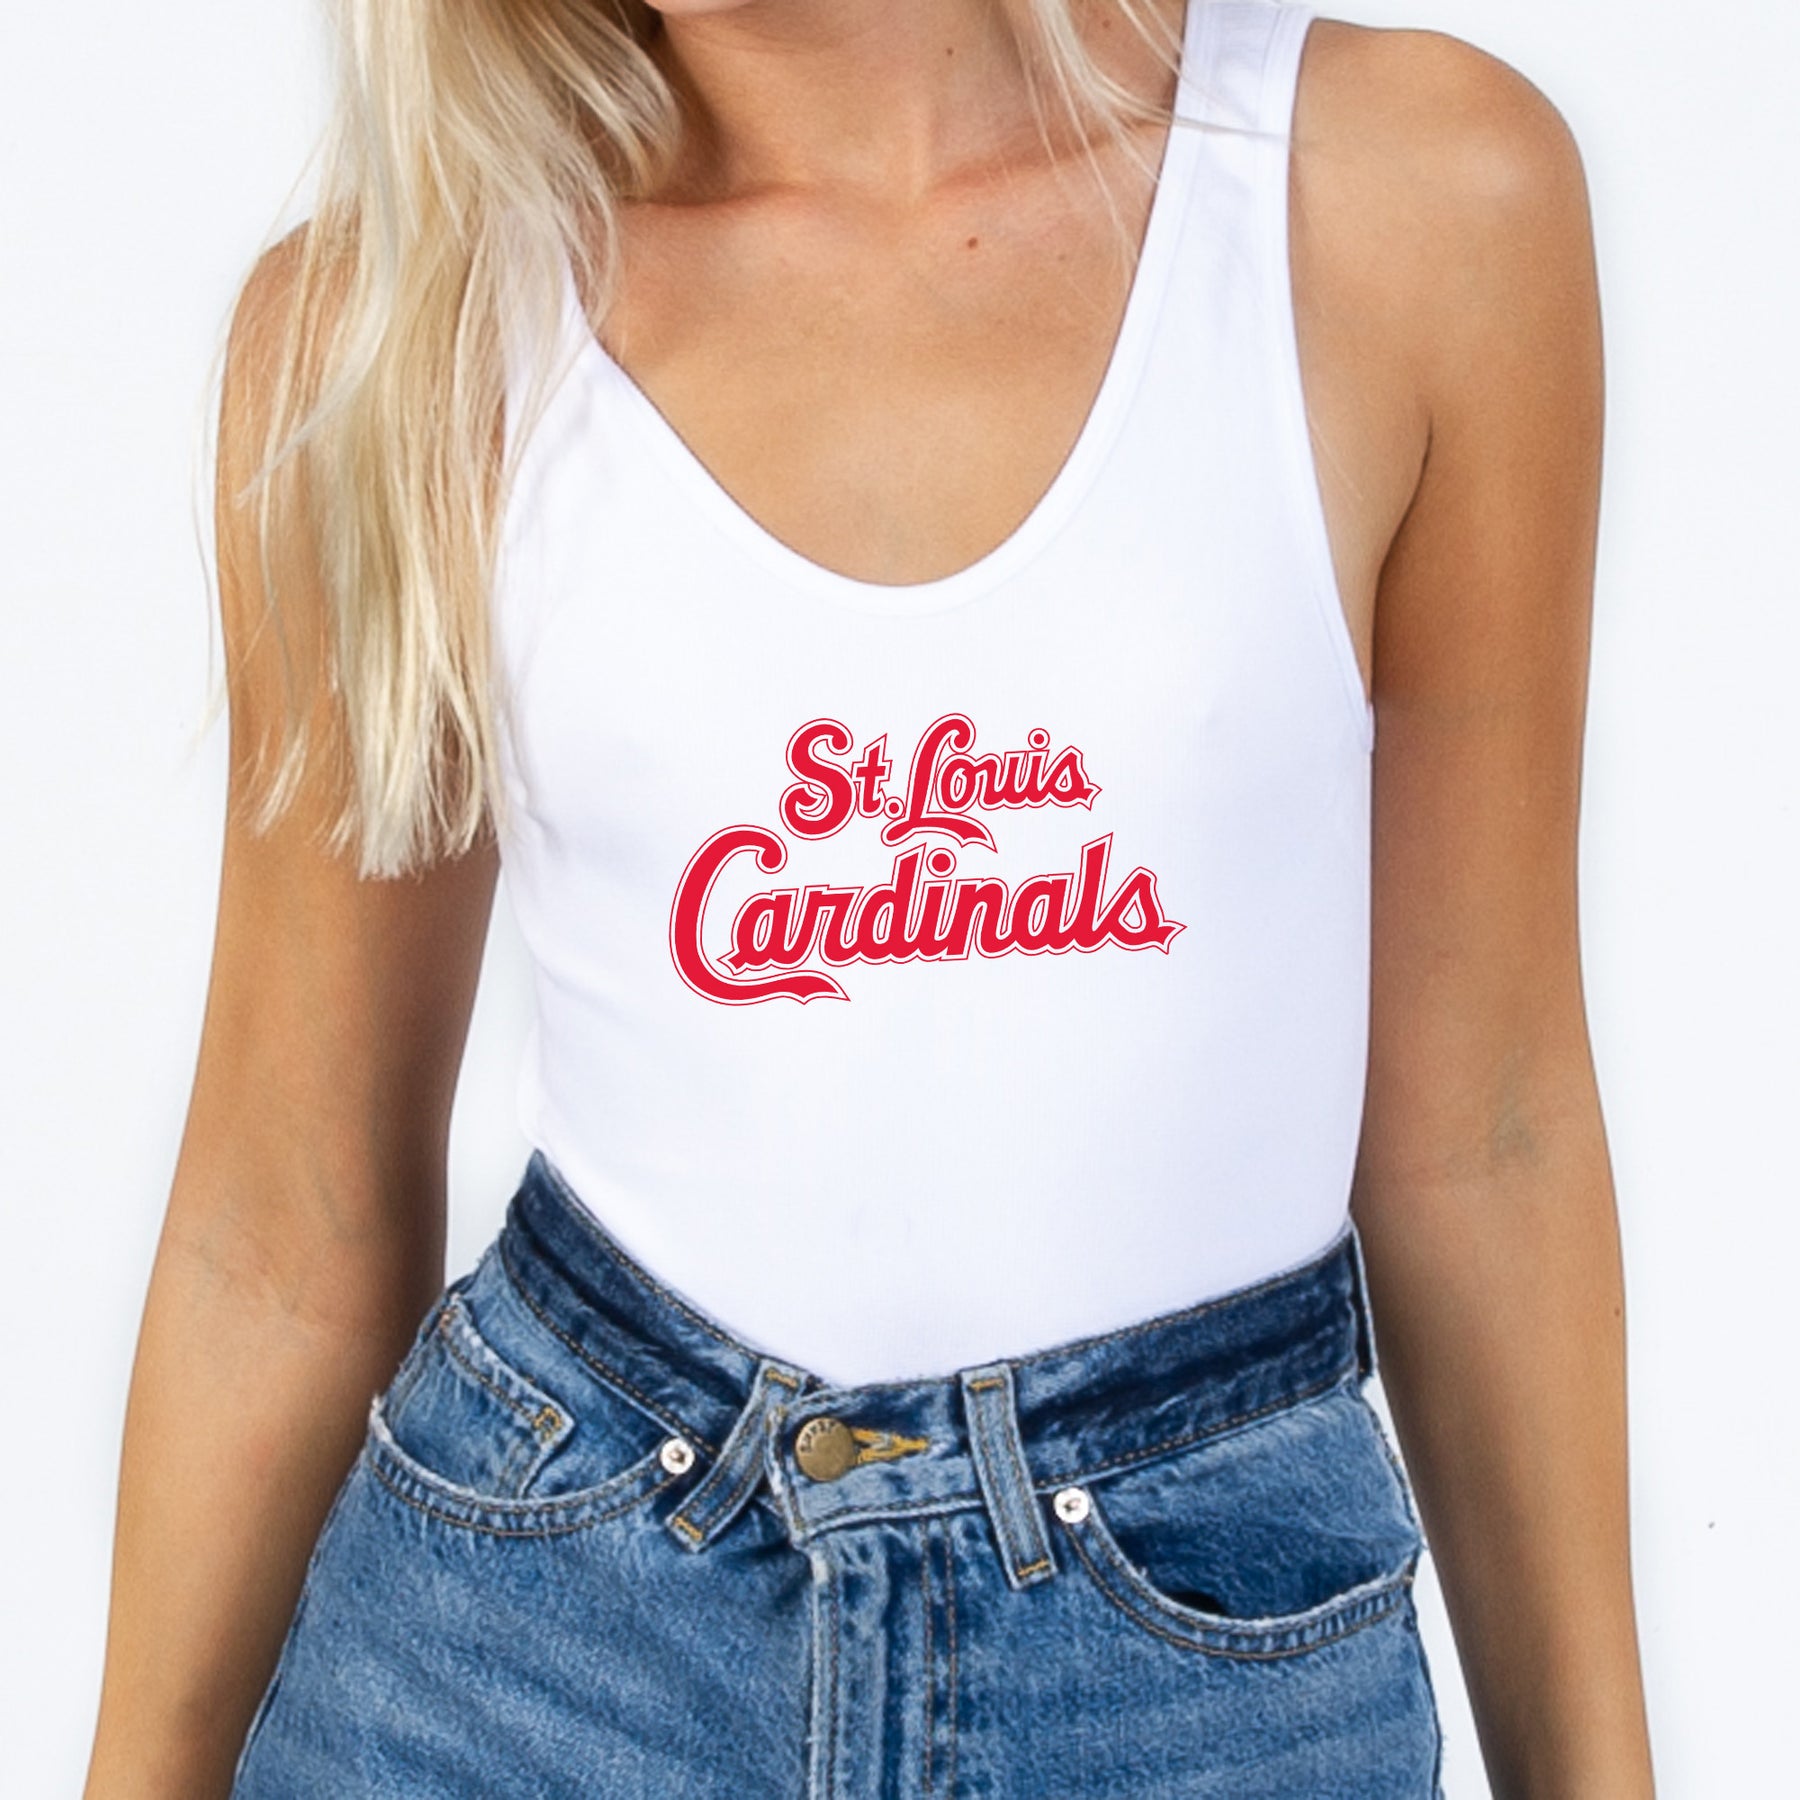 St Louis Cardinals team